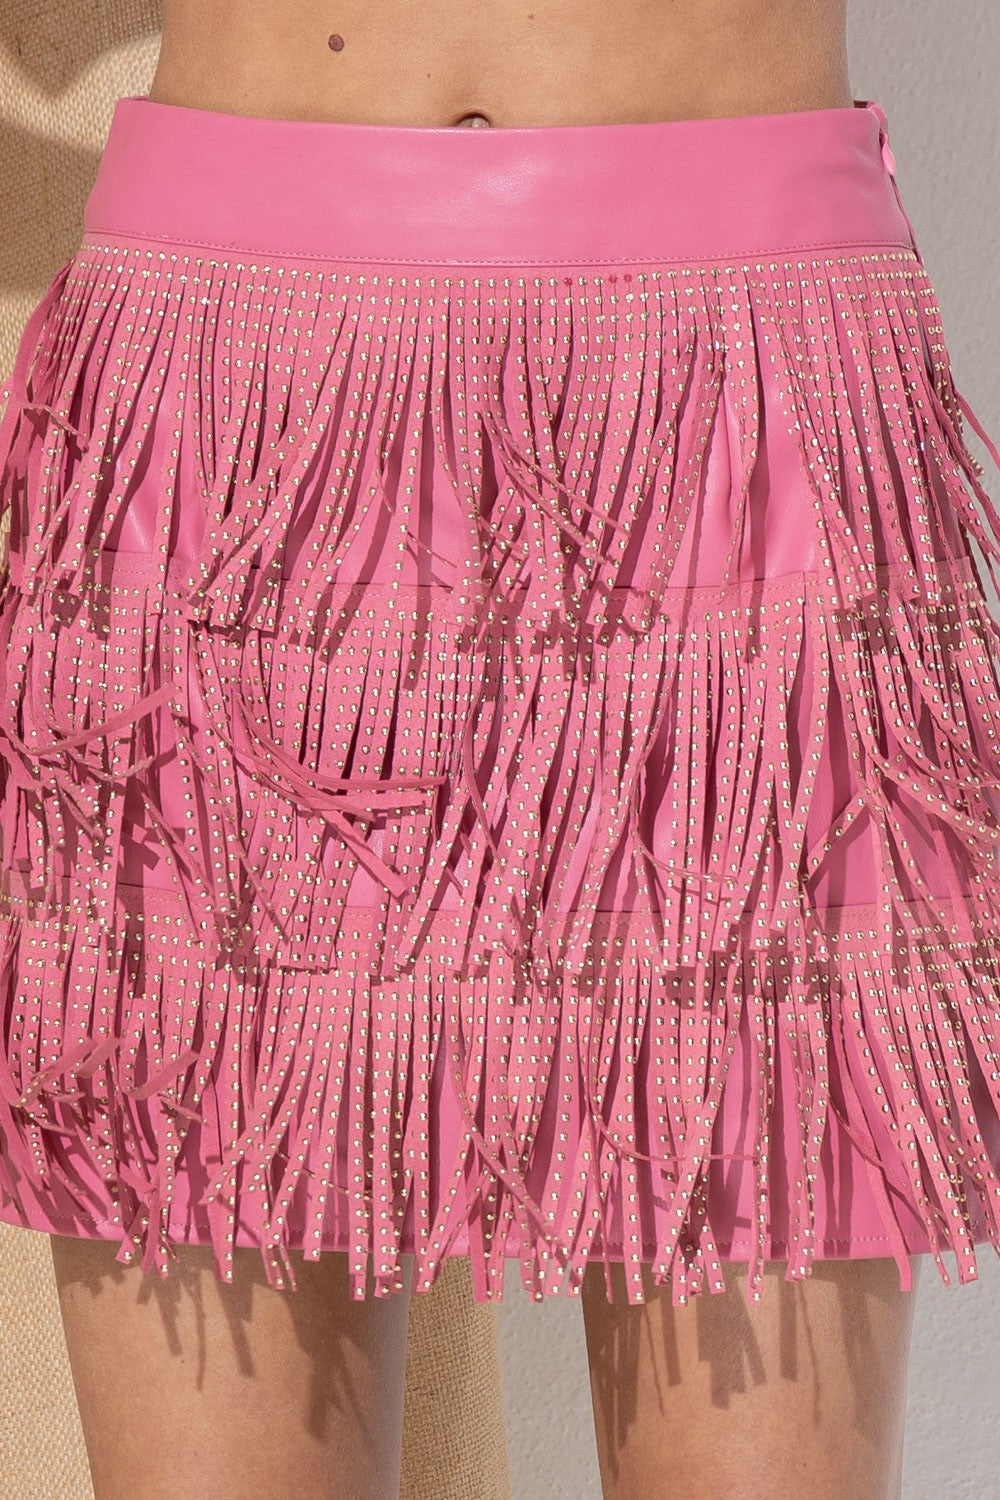 Pink fringe skirt